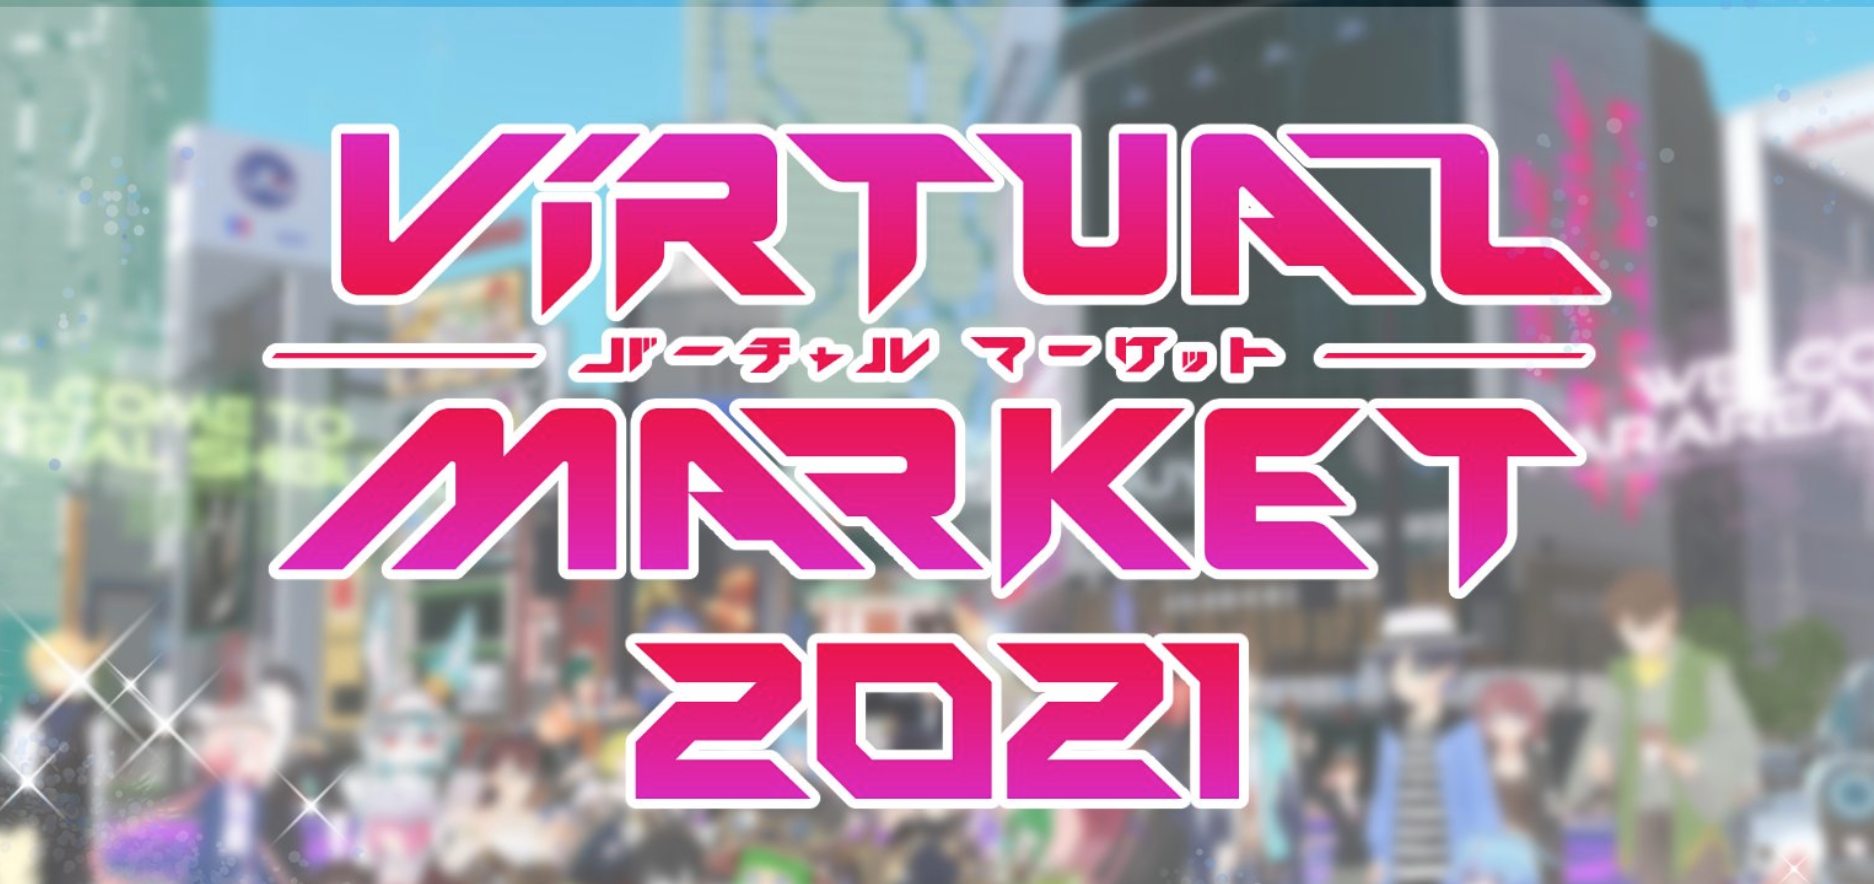 Virtual Market (Vket) 2021 Exhibit